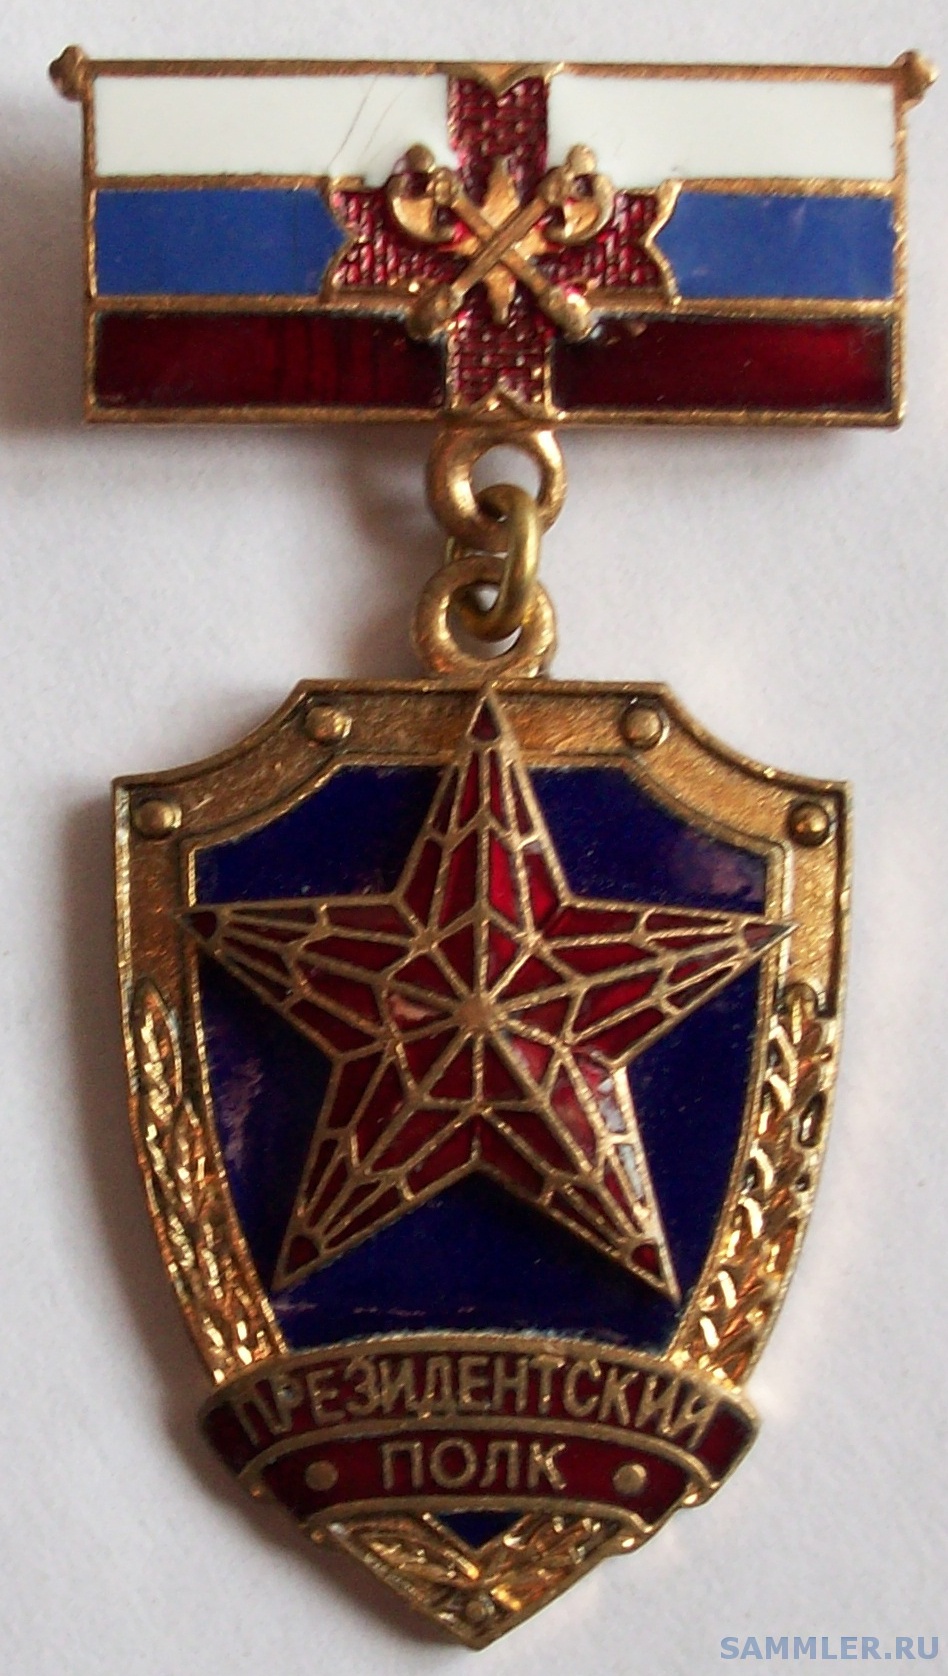 Президентский полк фсо знаки отличия